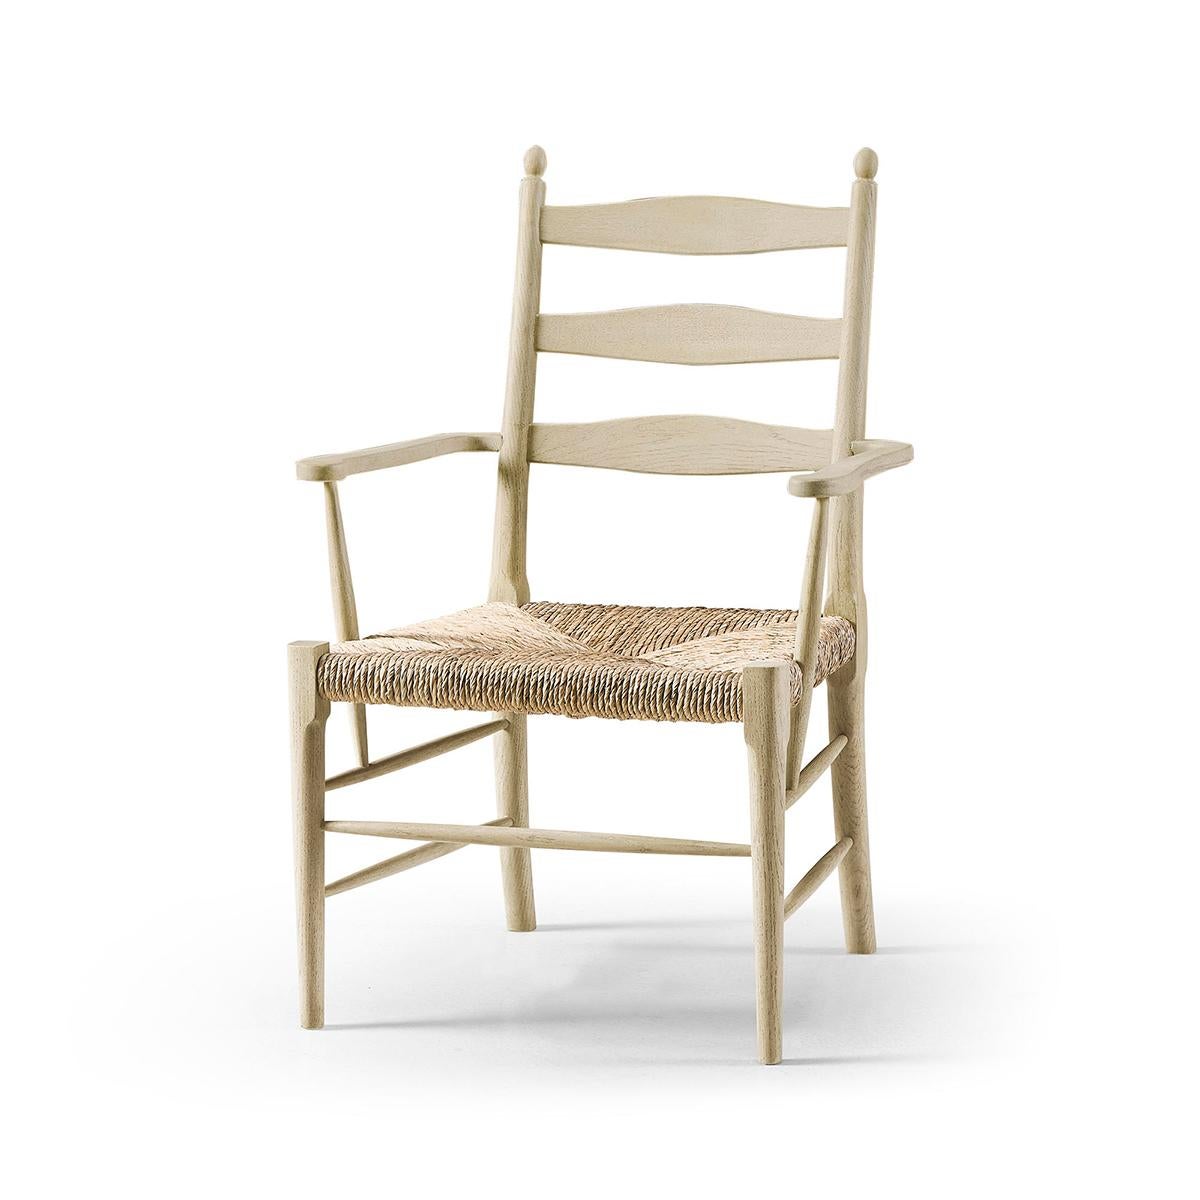 Un chef-d'œuvre de confort et d'élégance rustique. Cette chaise est dotée d'un cadre robuste en chêne dépouillé qui révèle le grain naturel exquis et le charme du bois, évoquant une beauté traditionnelle. Enveloppée dans des coussins en tissu